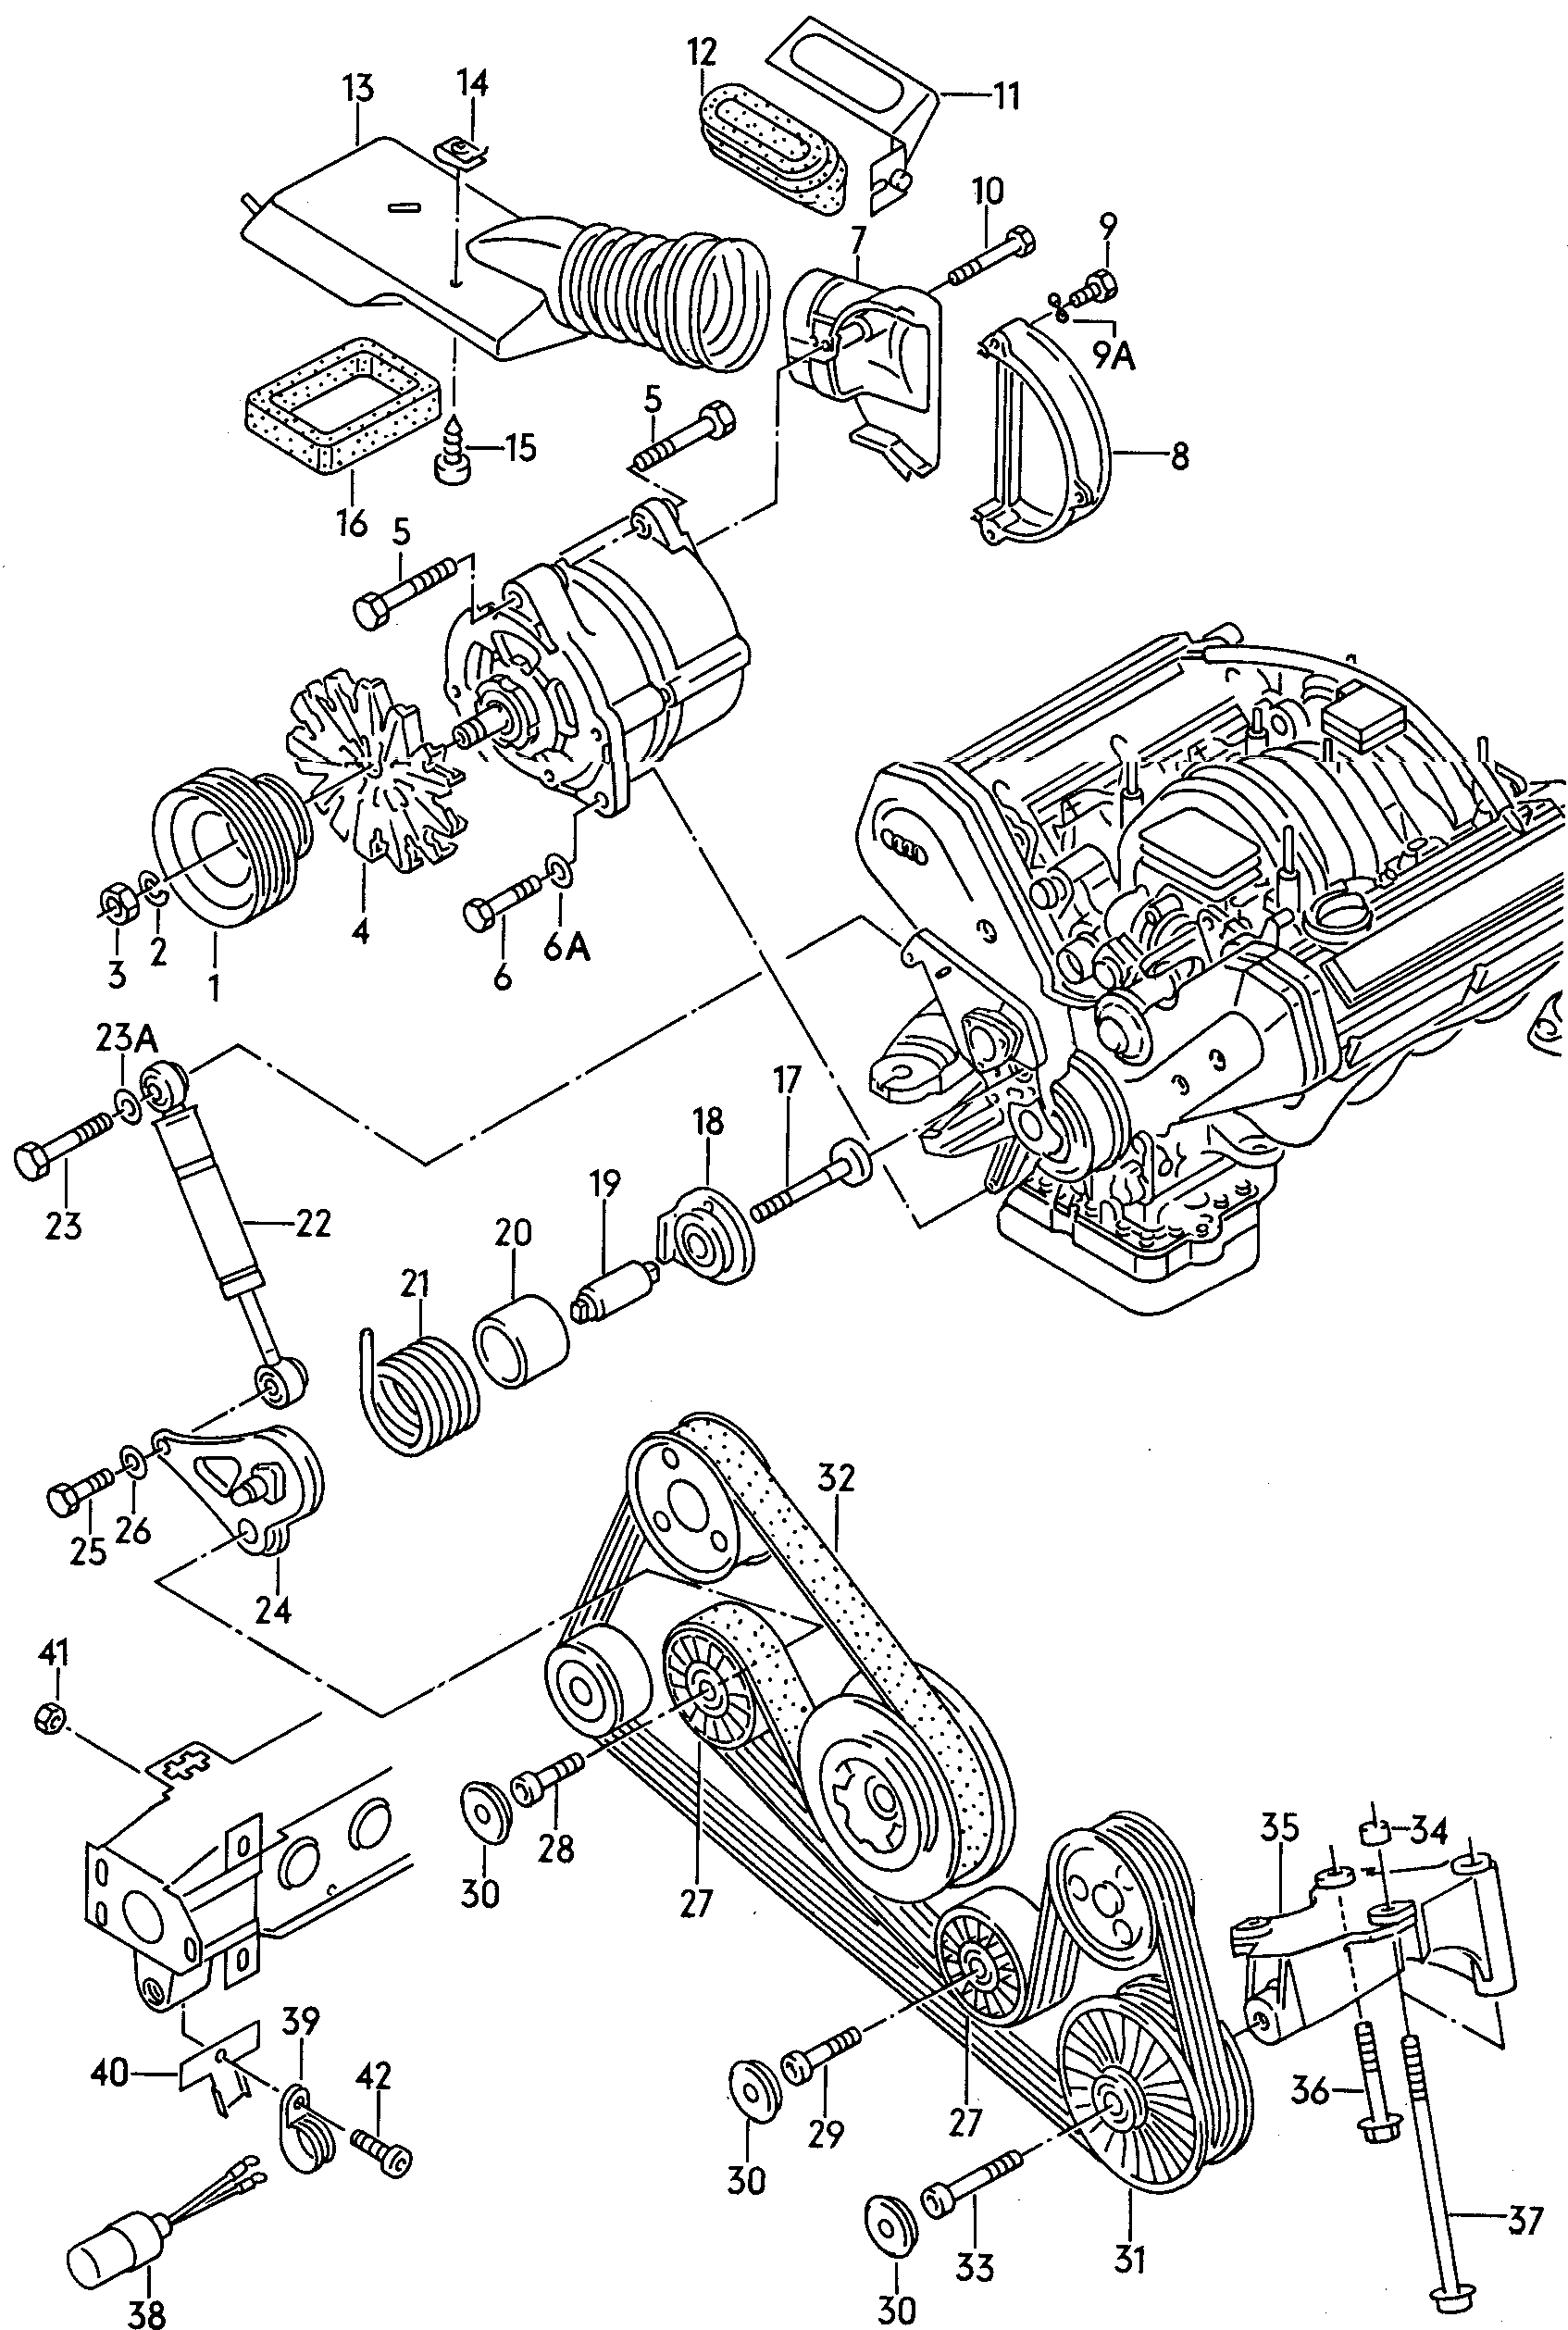 connecting and mounting parts<br>for alternatoridler pulleyPoly-V-belt  - Audi V8 - v8